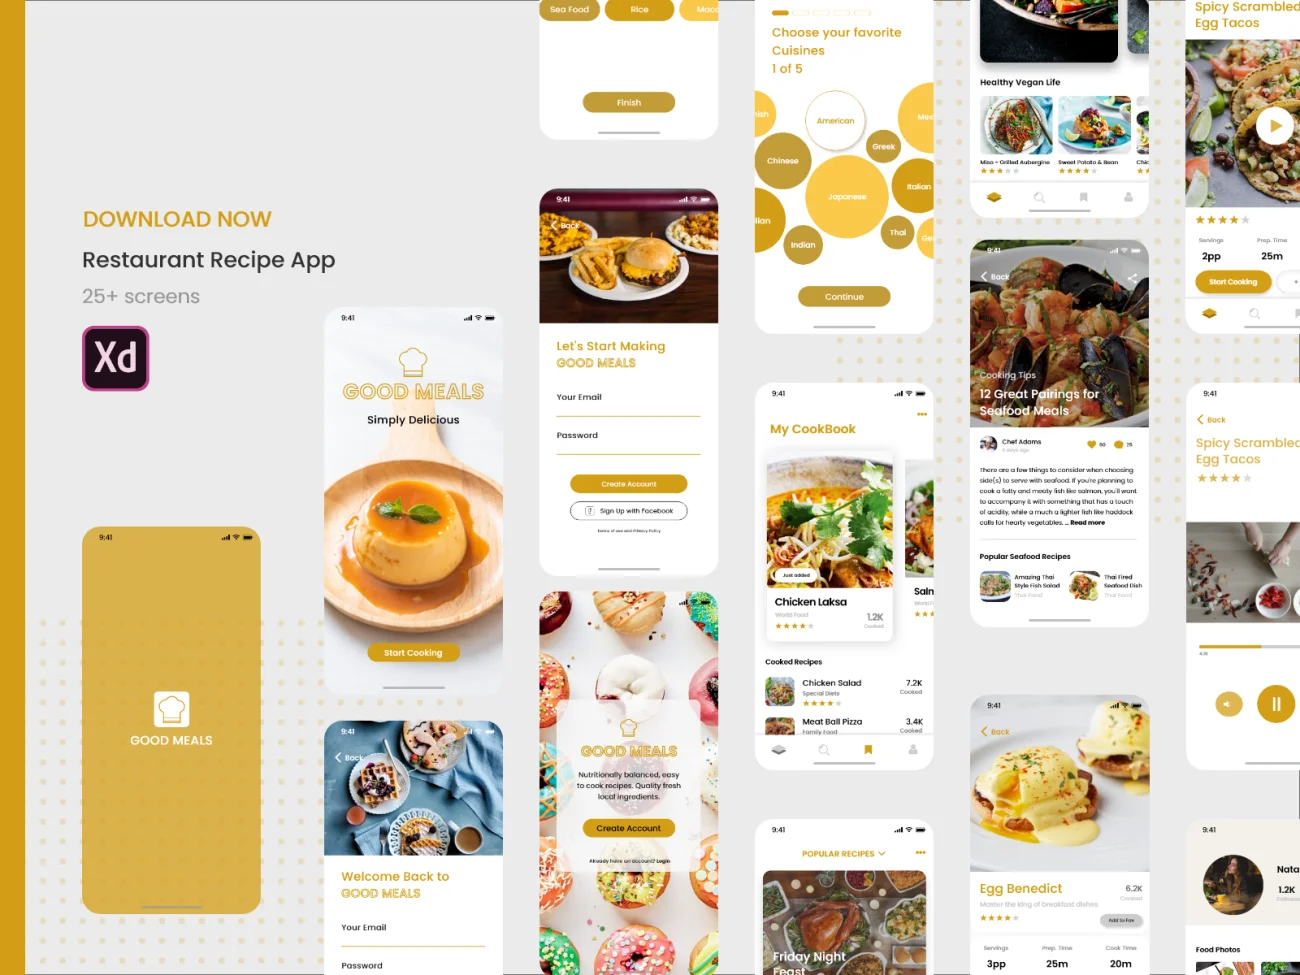 甜品蛋糕下午茶外卖点餐应用UI设计套件 restaurant recipe app-UI/UX、ui套件、应用、支付、网购、表单、详情、预订-到位啦UI